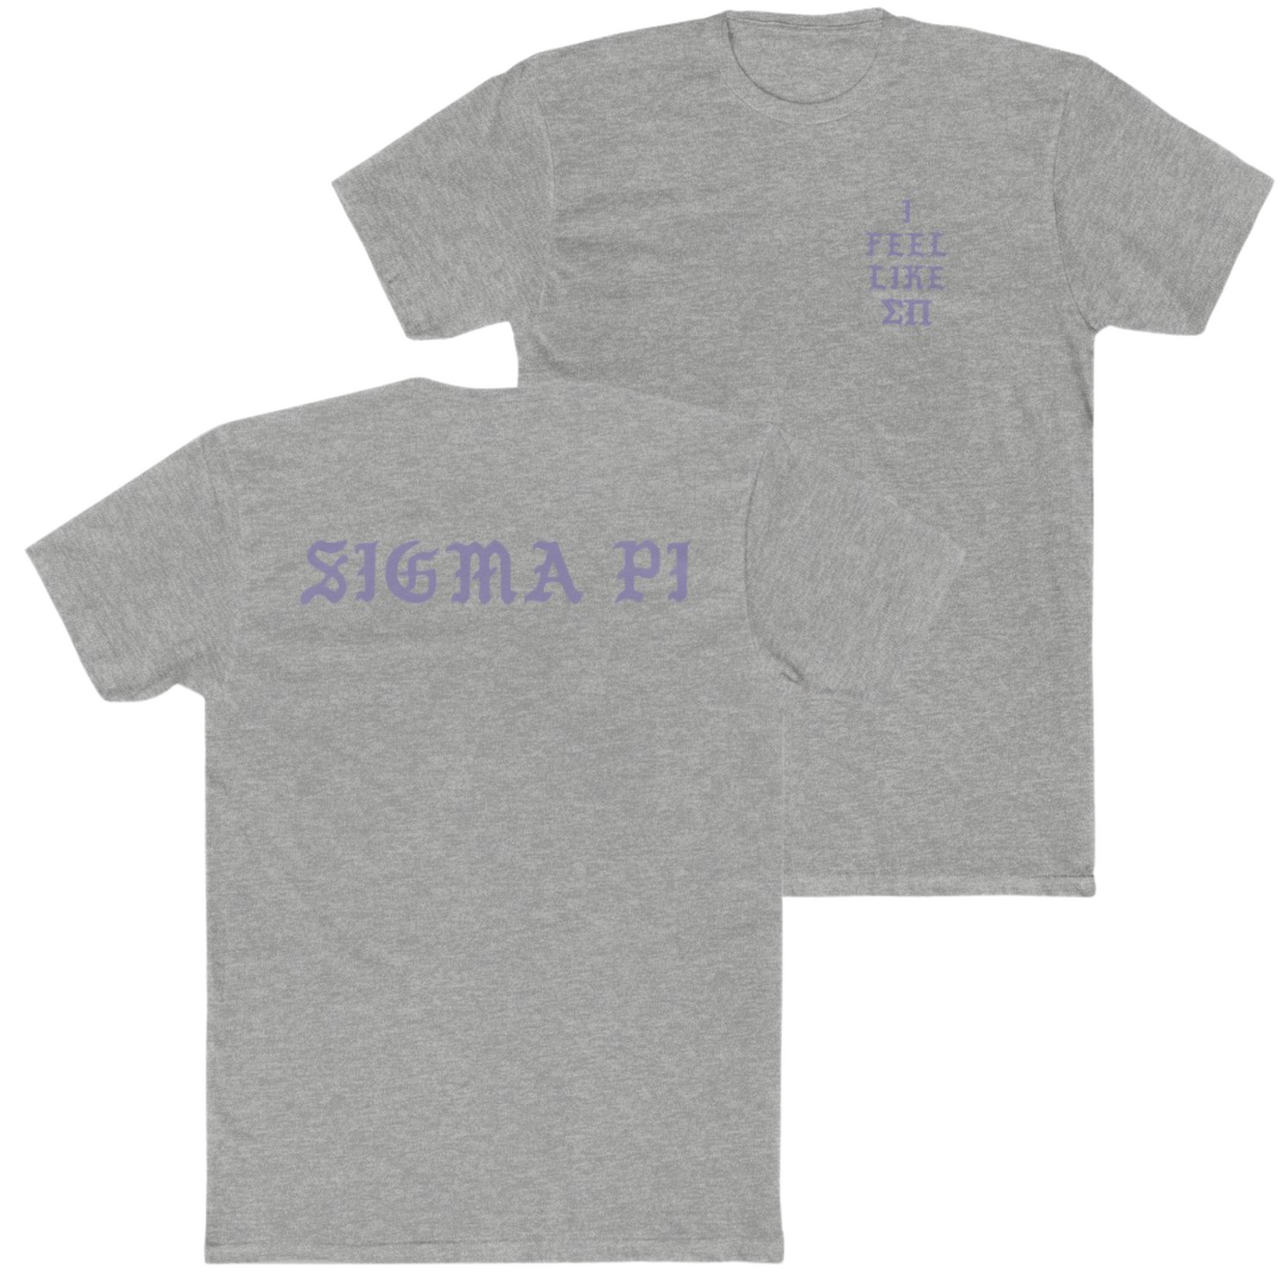 Sigma Pi Graphic T-Shirt | Life of Sigma Pi